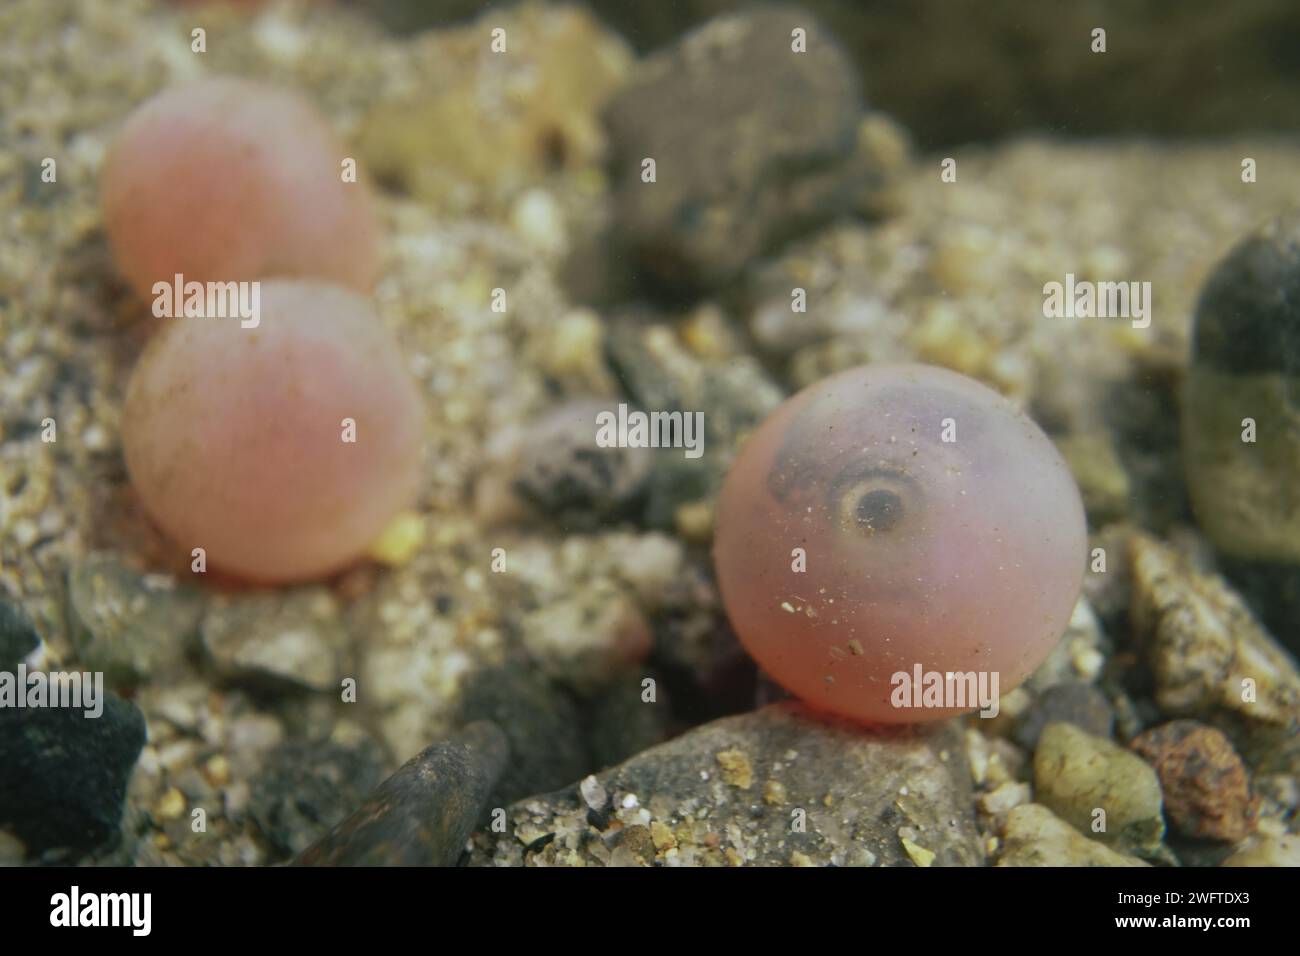 Oeuf de saumon du Pacifique avec un embryon visible à l'intérieur. Banque D'Images